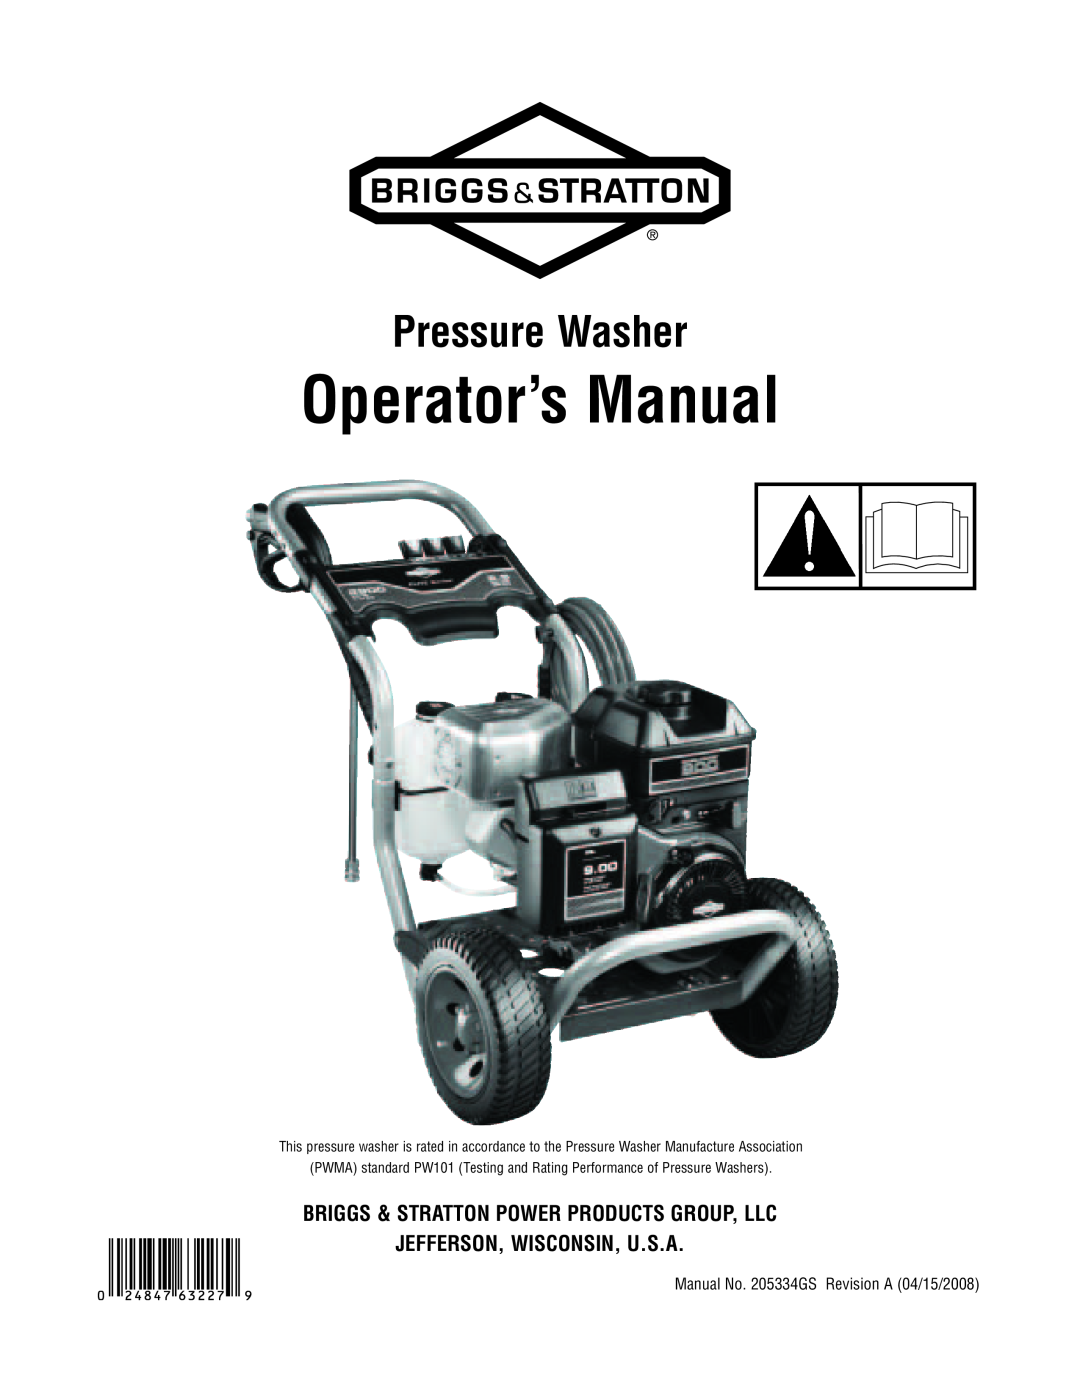 Briggs & Stratton 2900 PSI manual Operator’s Manual, Pressure Washer 